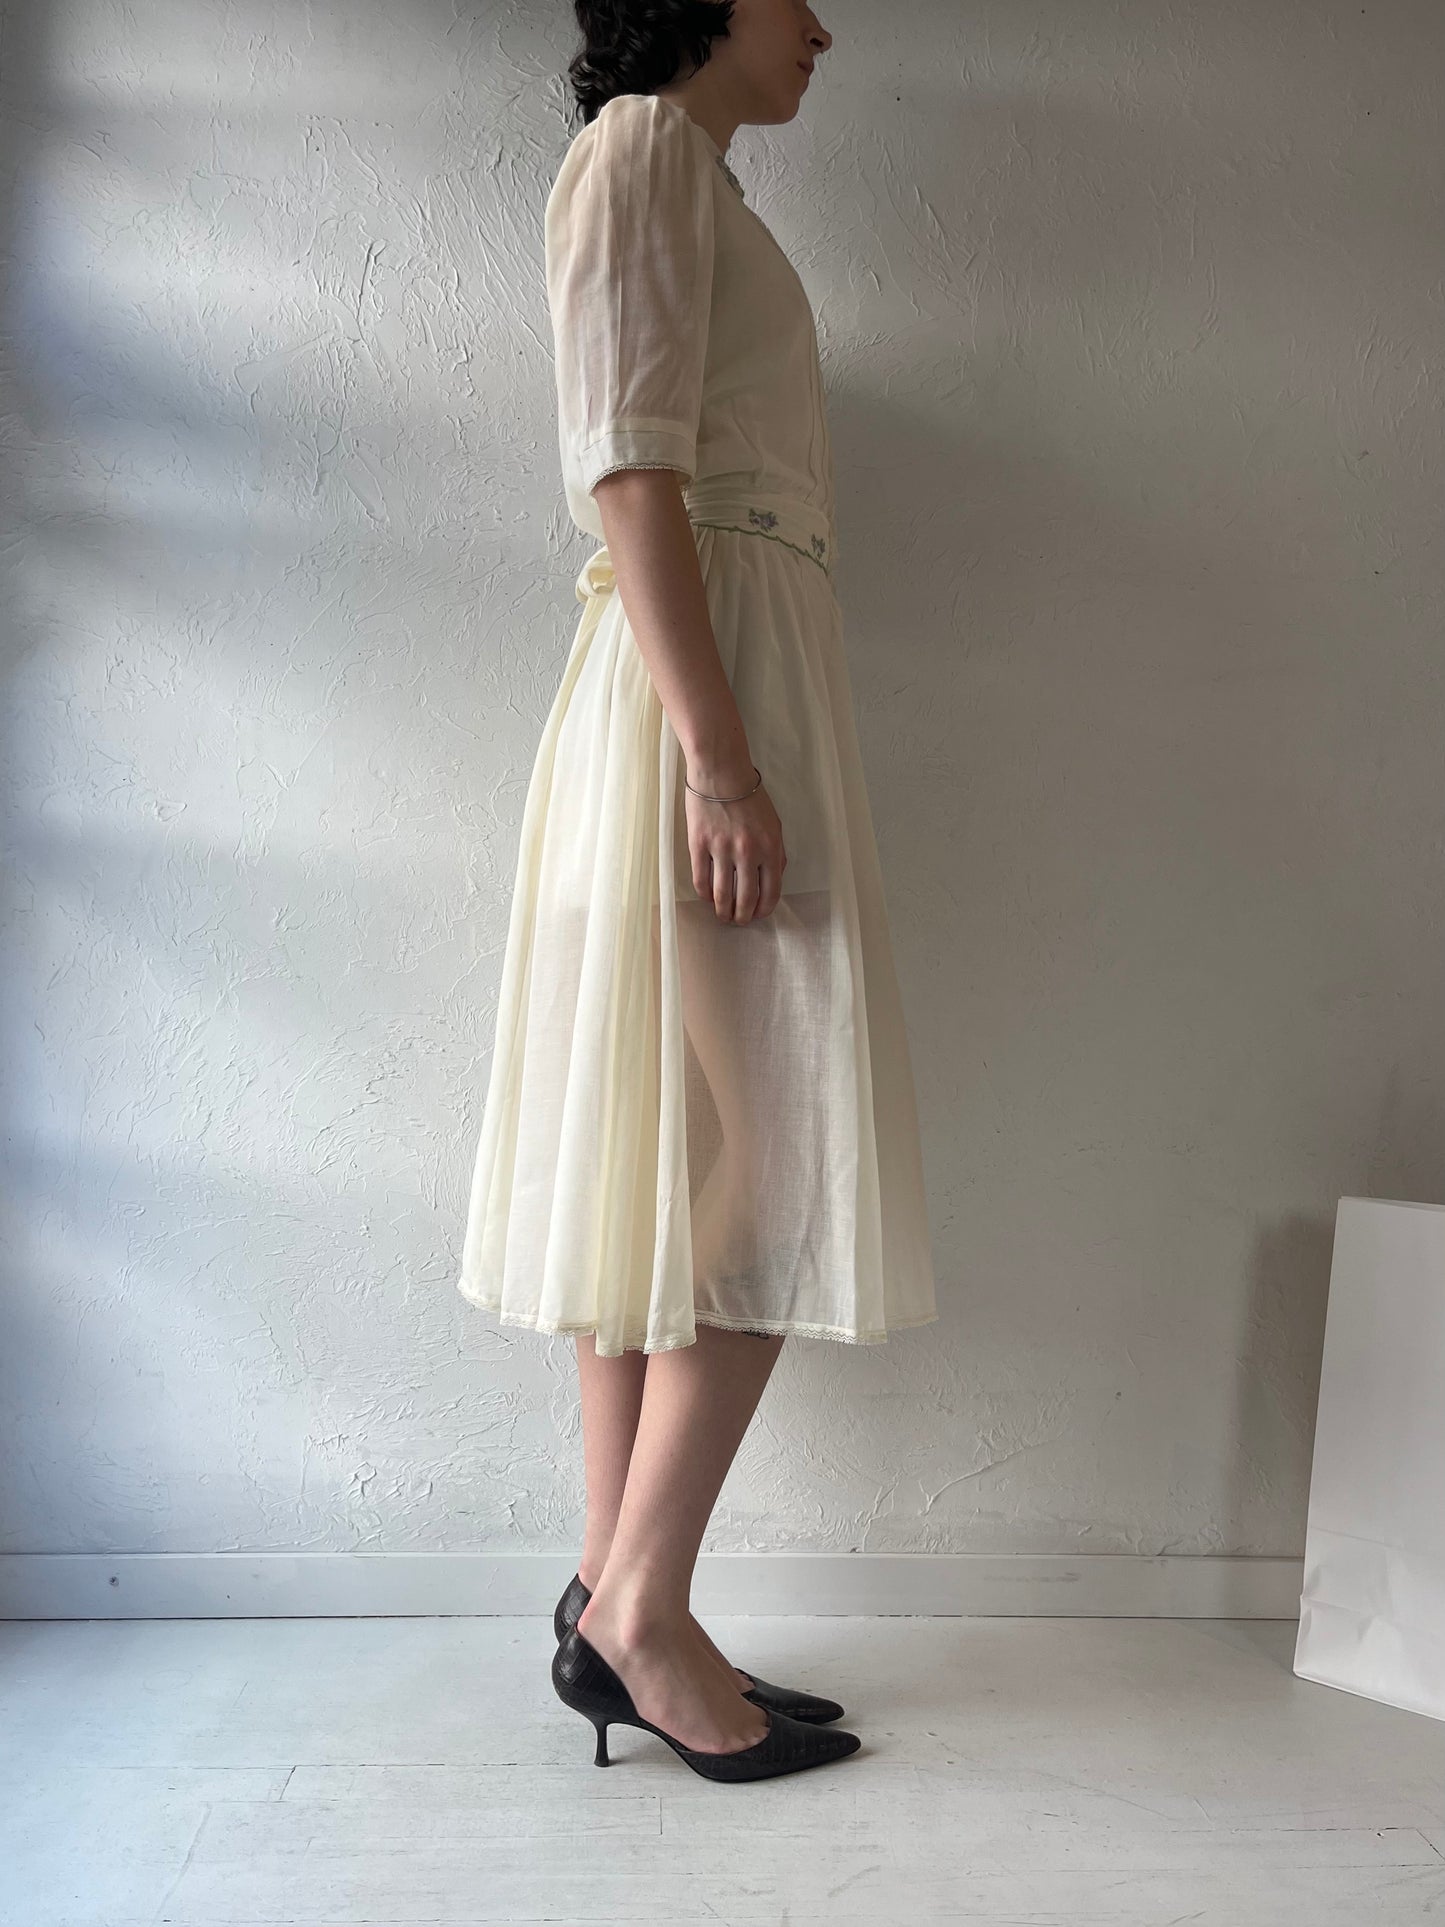 70s 'Gunne Sax' Sheer Cream Cotton Dress / Small